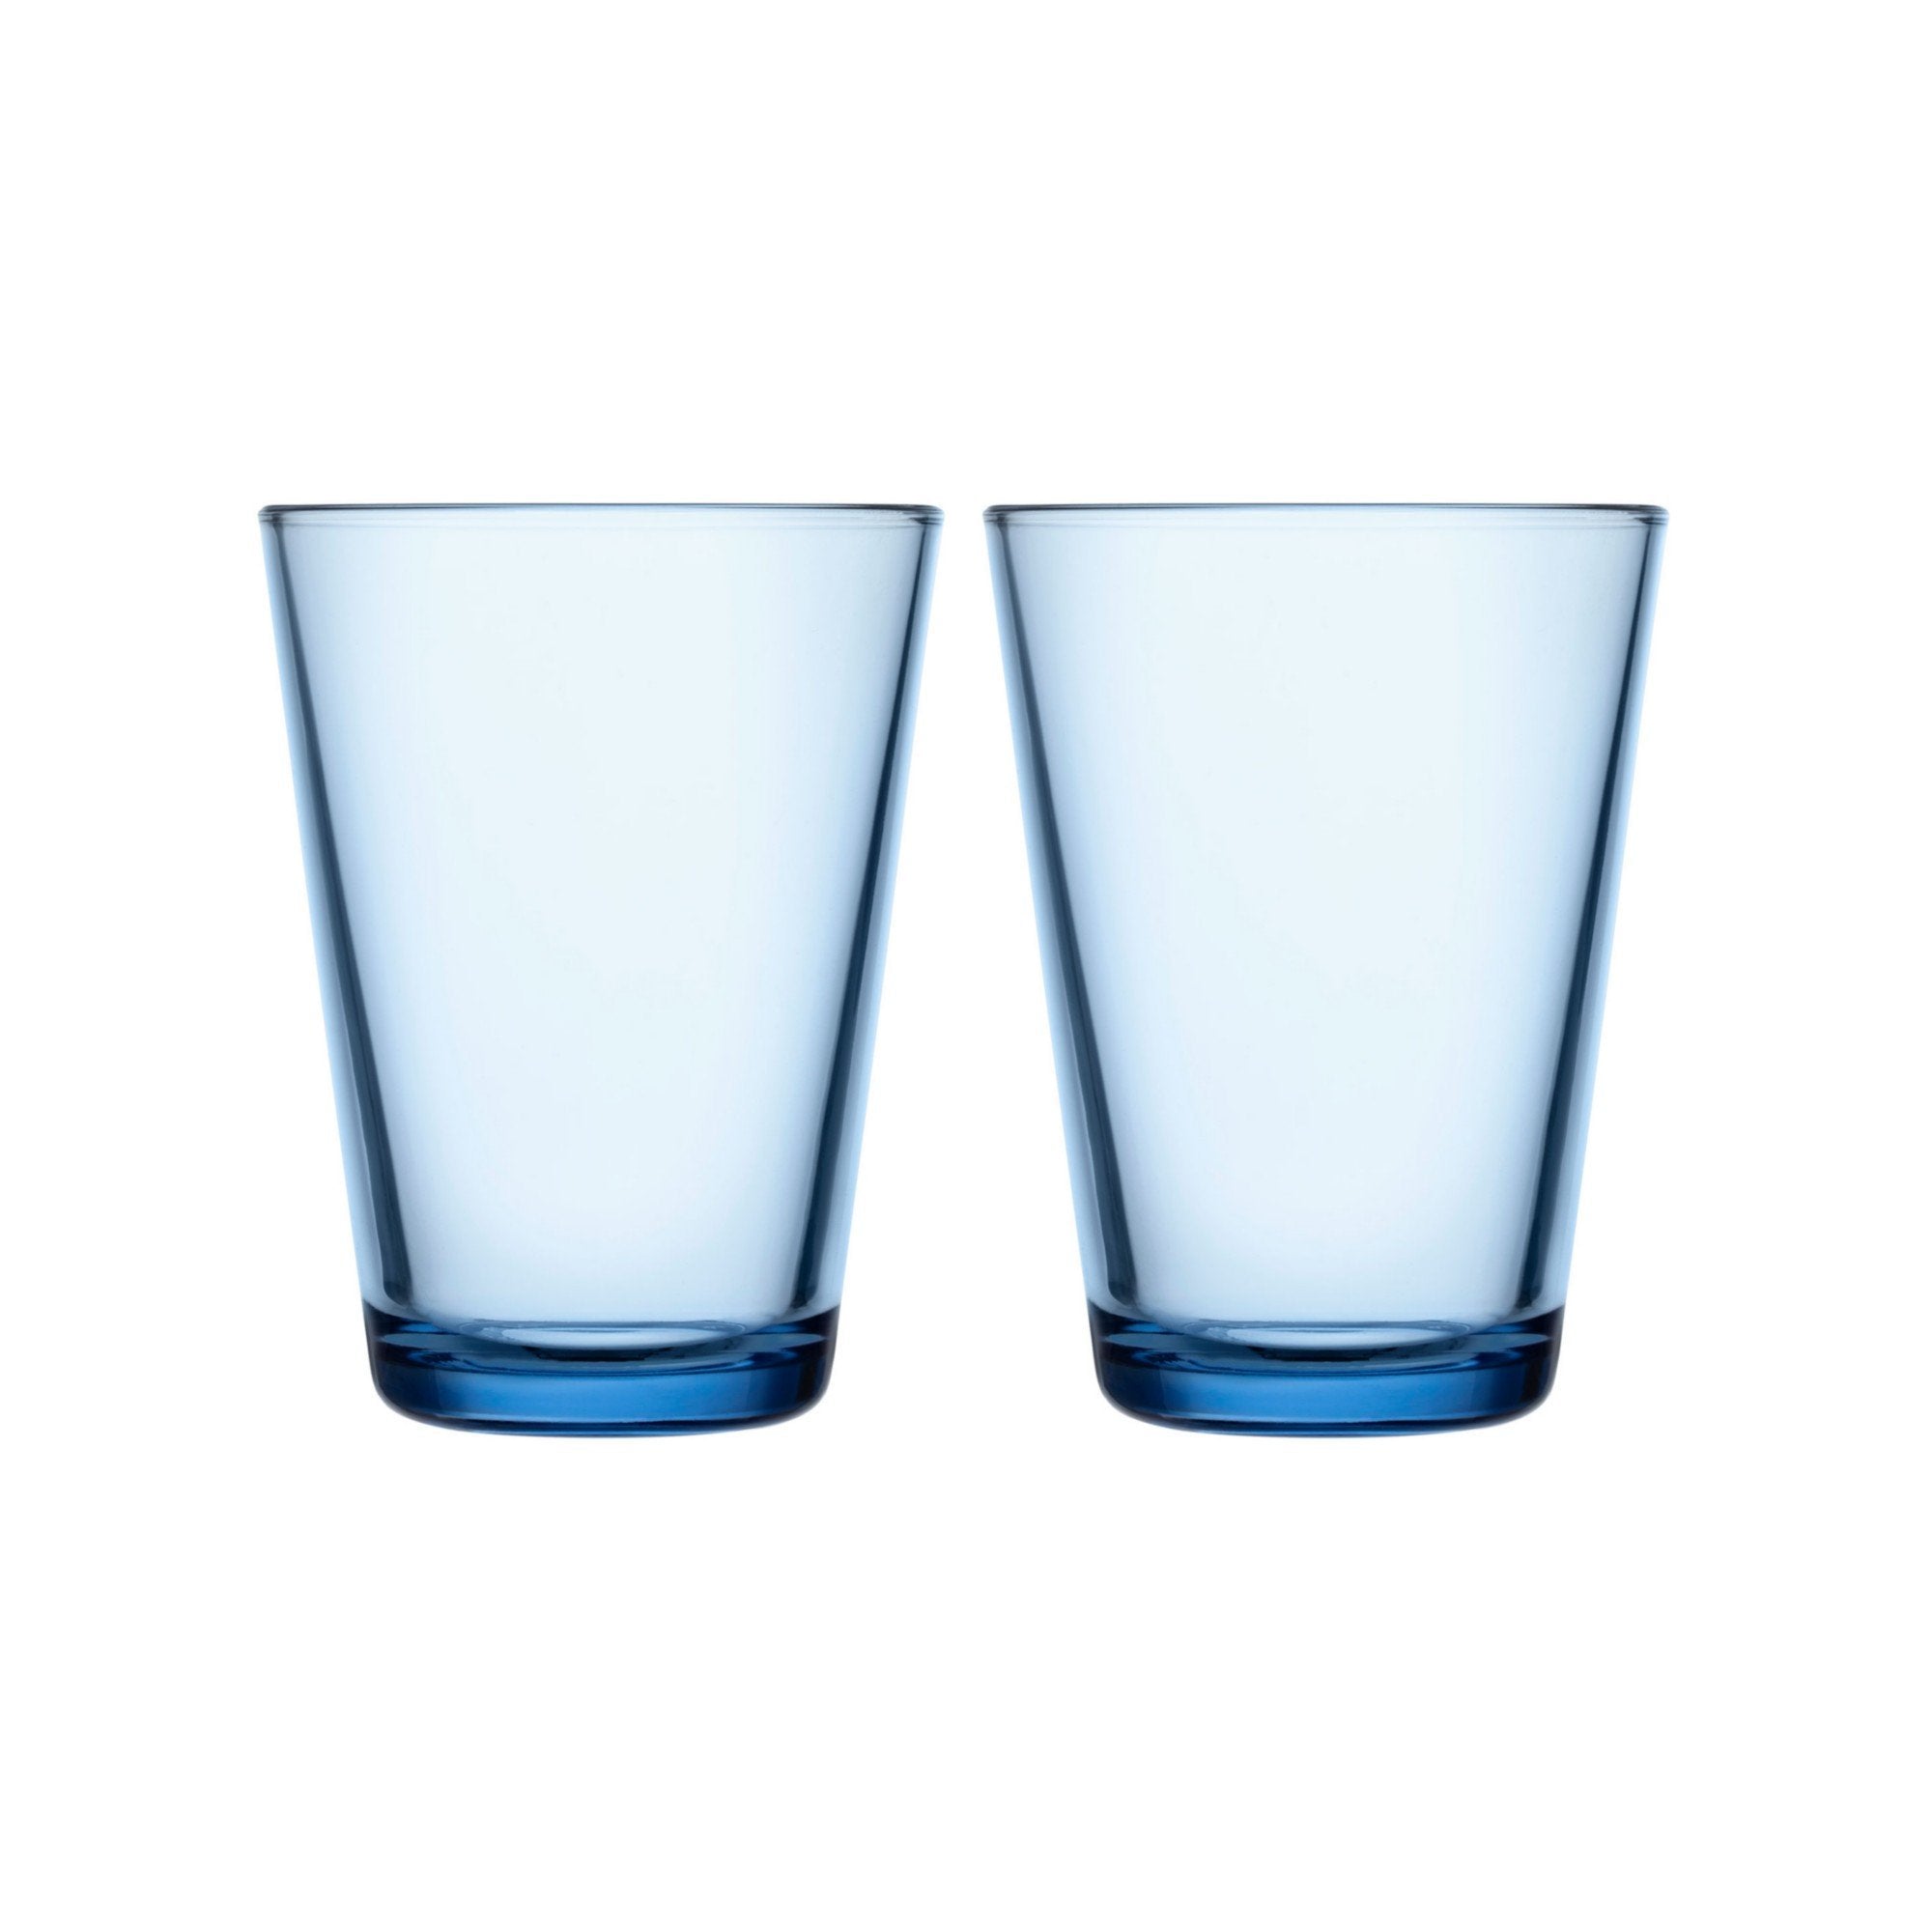 Iittala Katio Drinking Glass Aqua 40Cl, 2 stks.